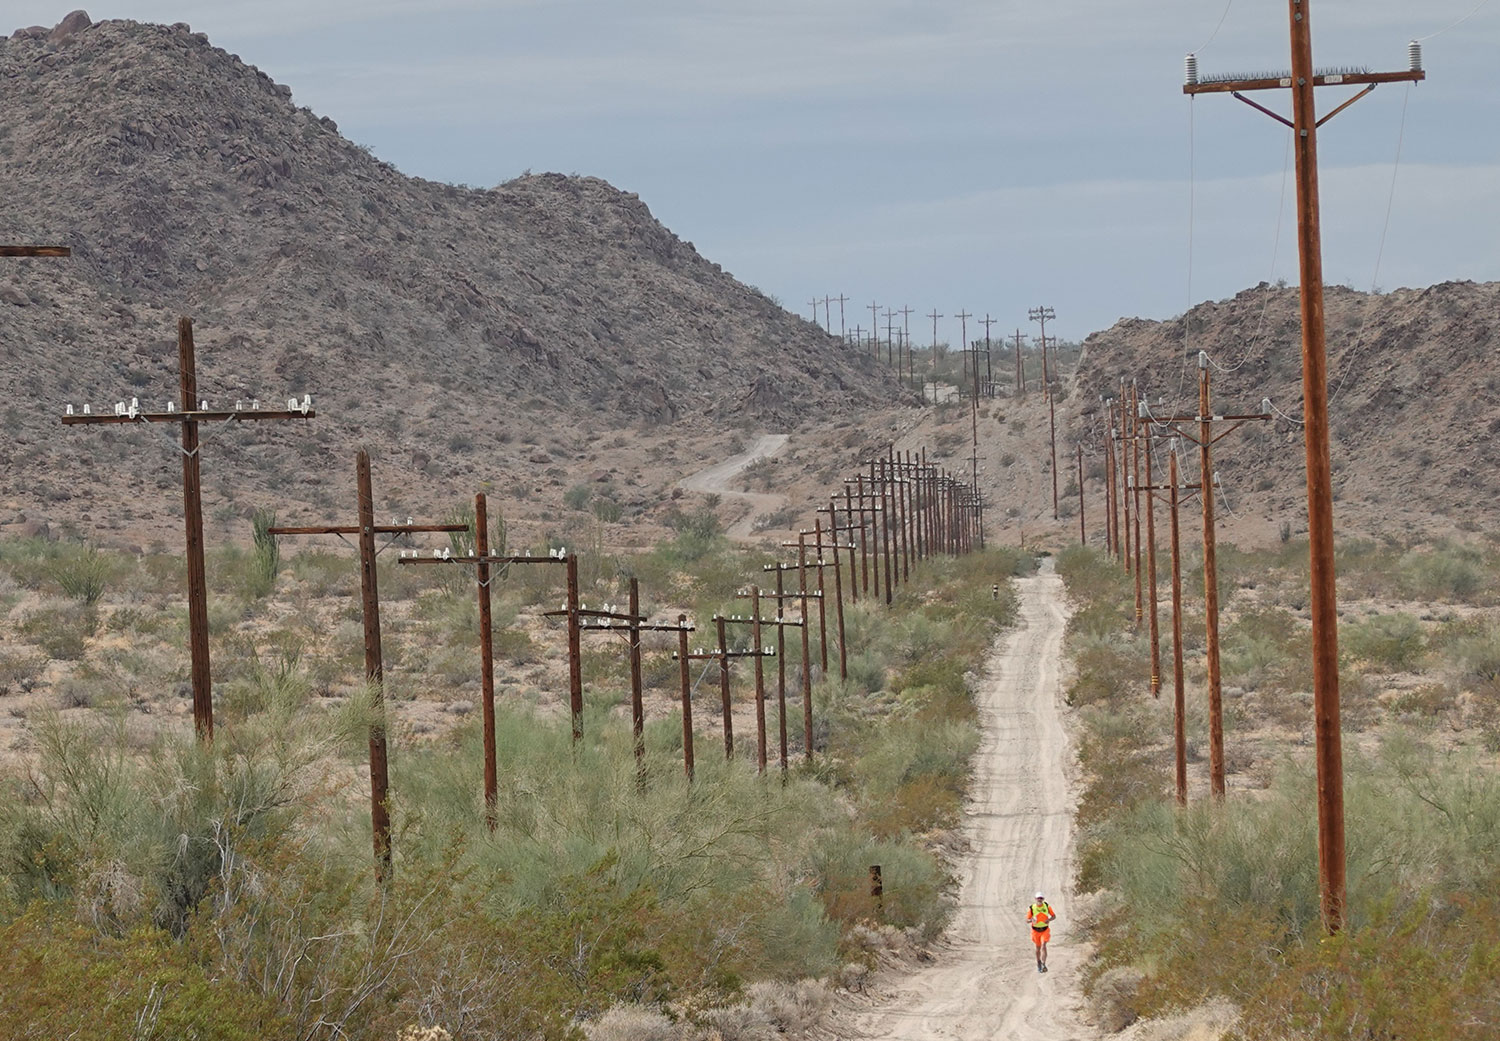 Don running in the Mojave Desert in California